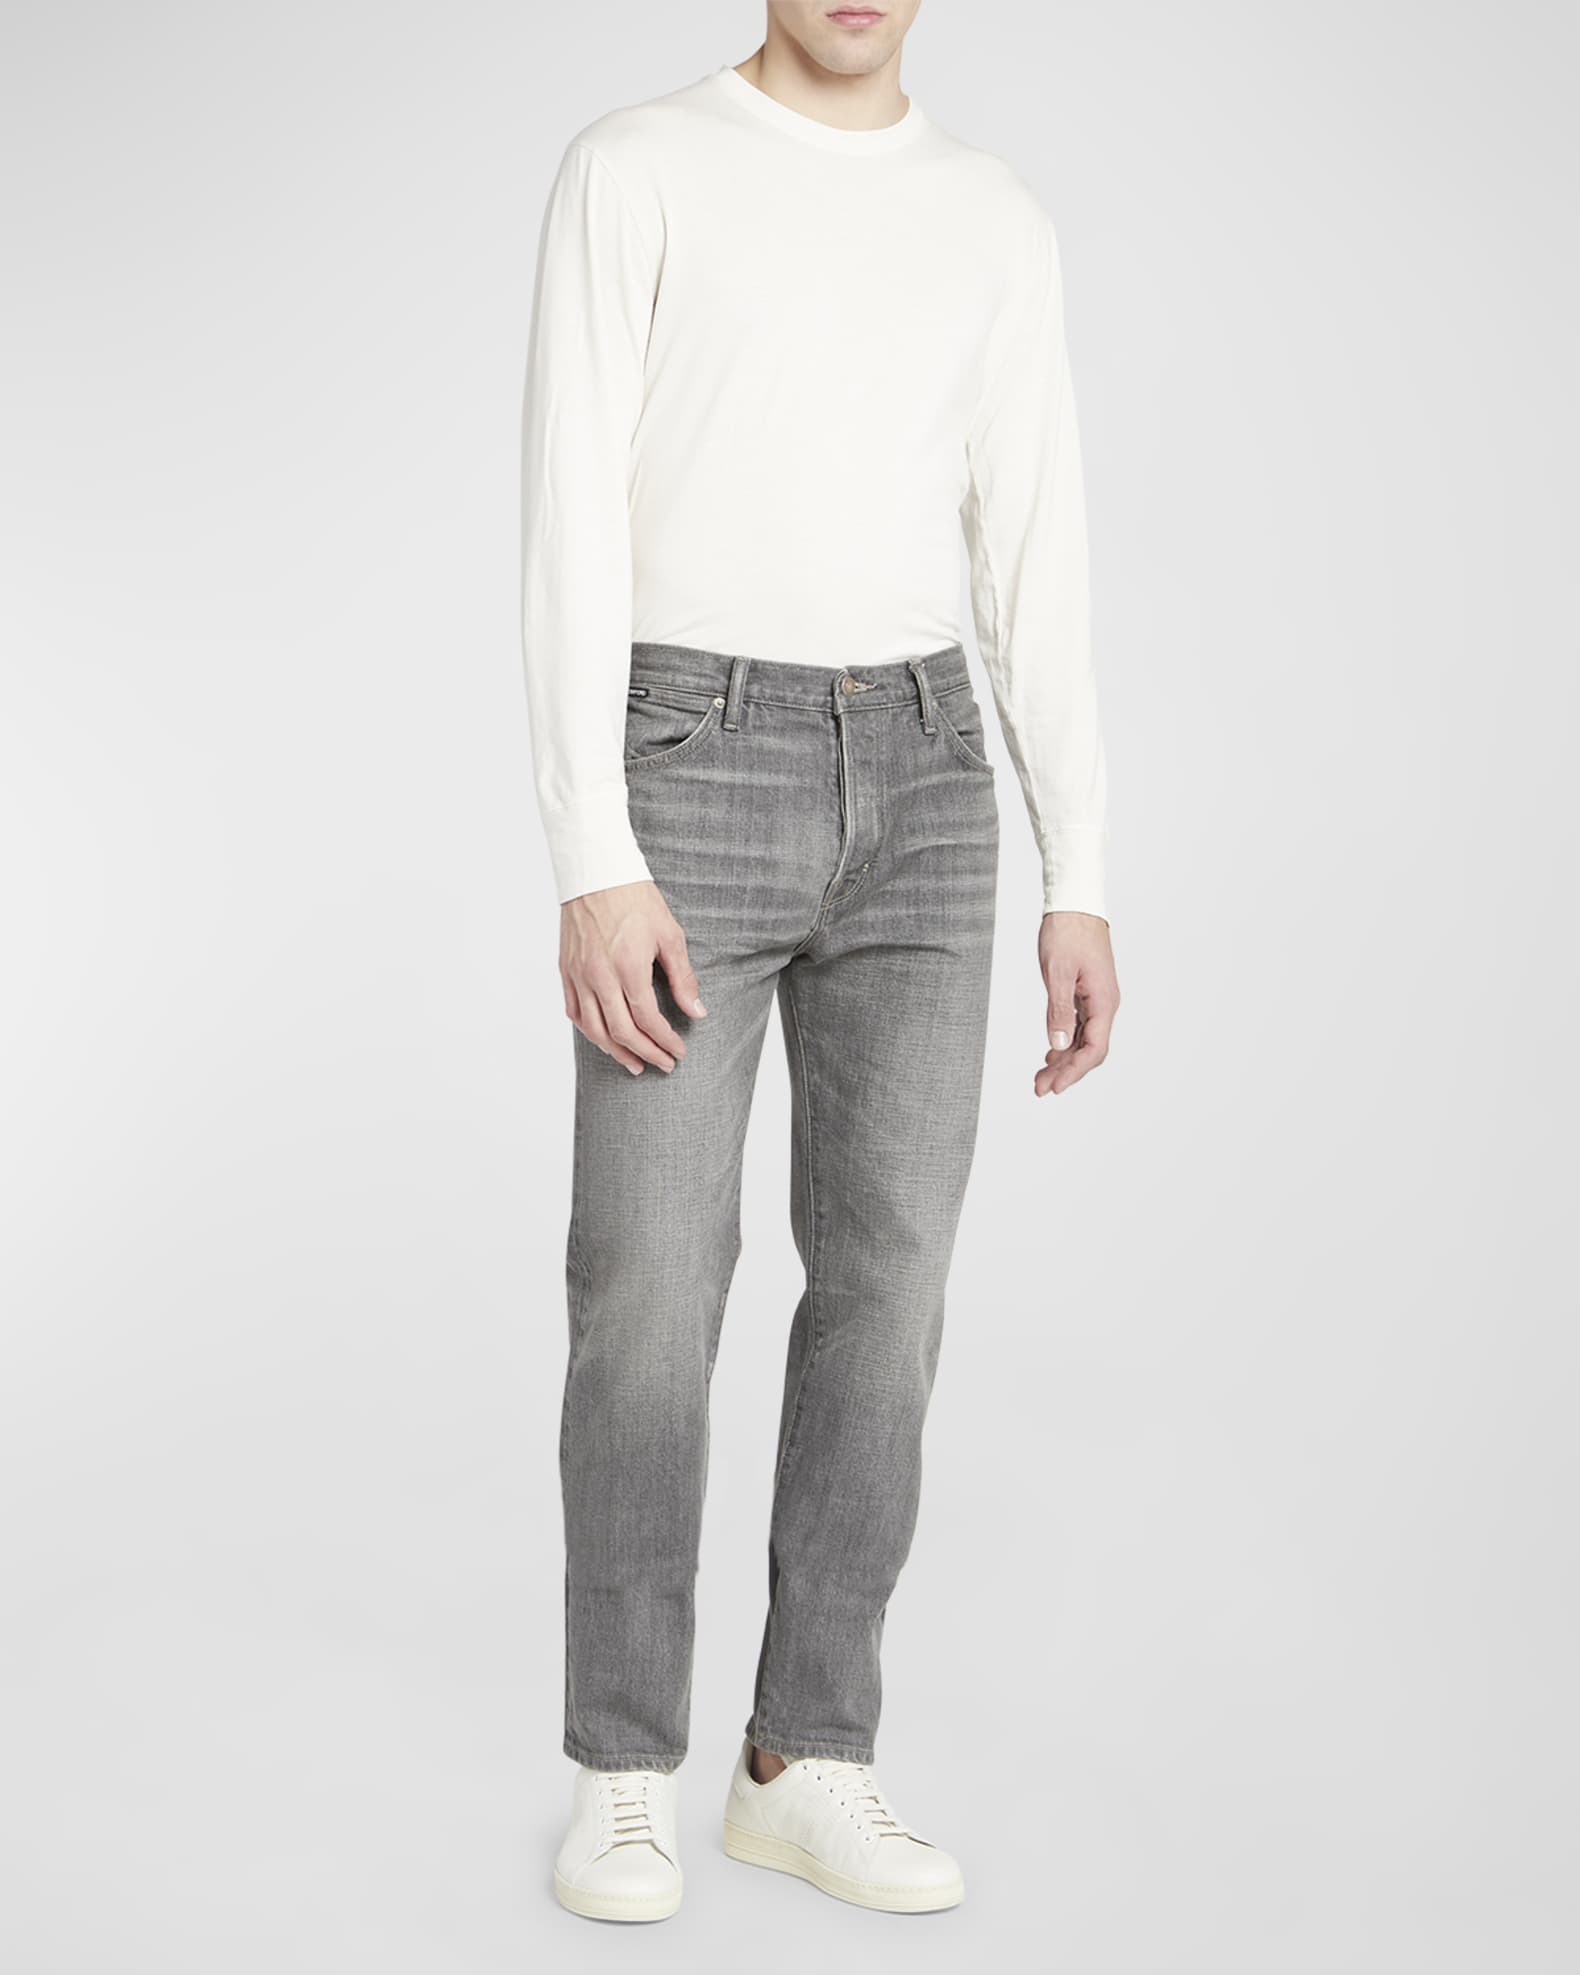 TOM FORD Men's Selvedge Denim Jeans | Neiman Marcus